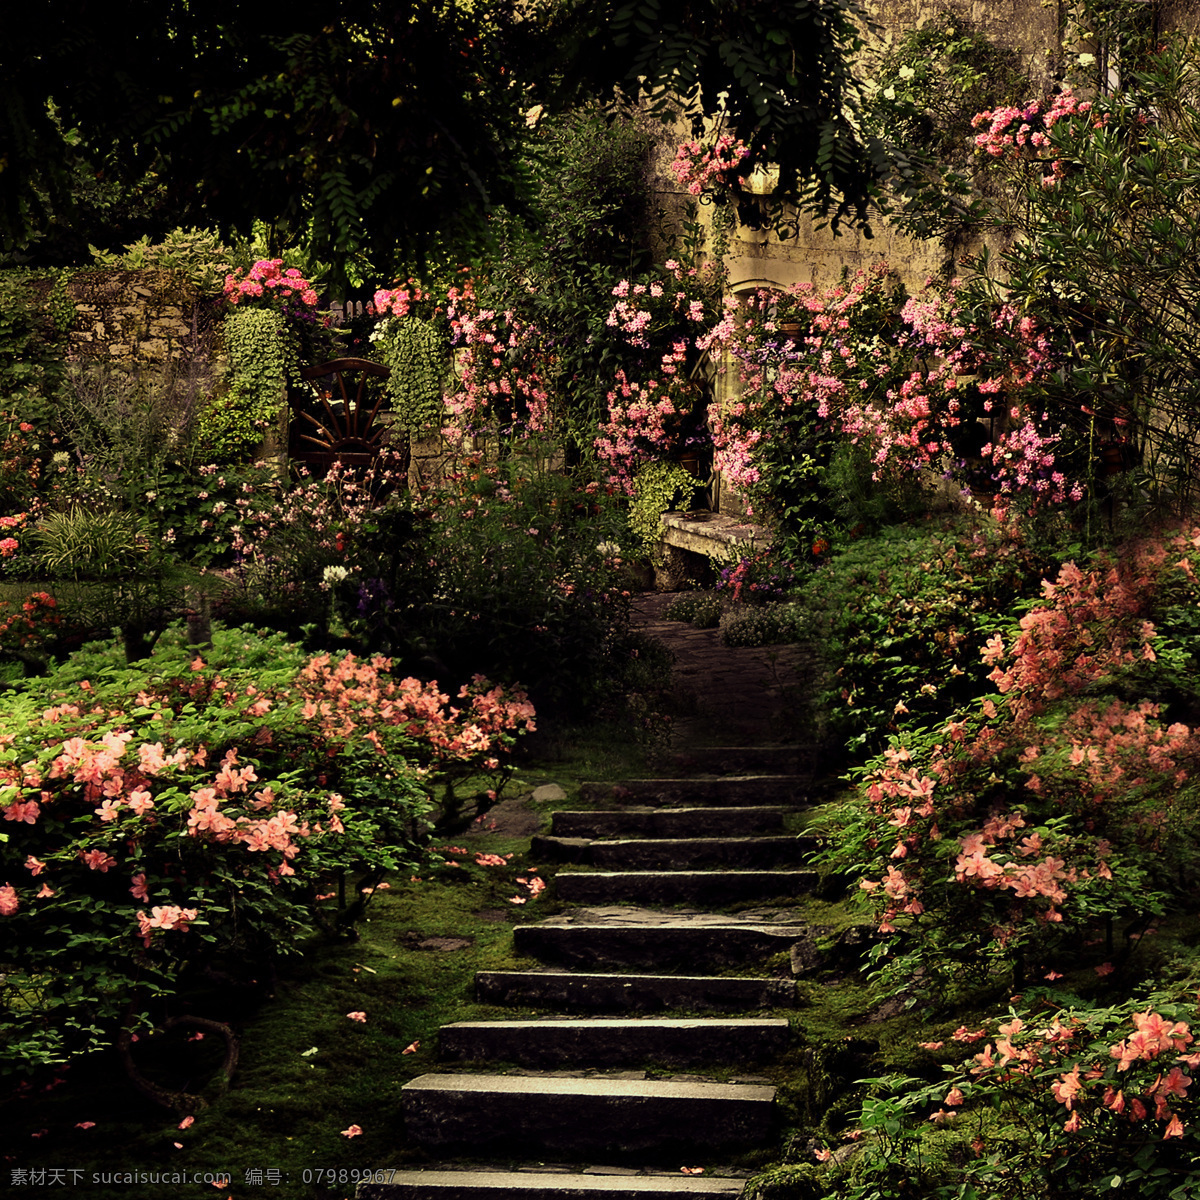 秘密花园 花园 阶梯 花朵 粉色 浪漫花园 梦境 花丛 美景 浪漫 童话 森林 自然风光 自然景观